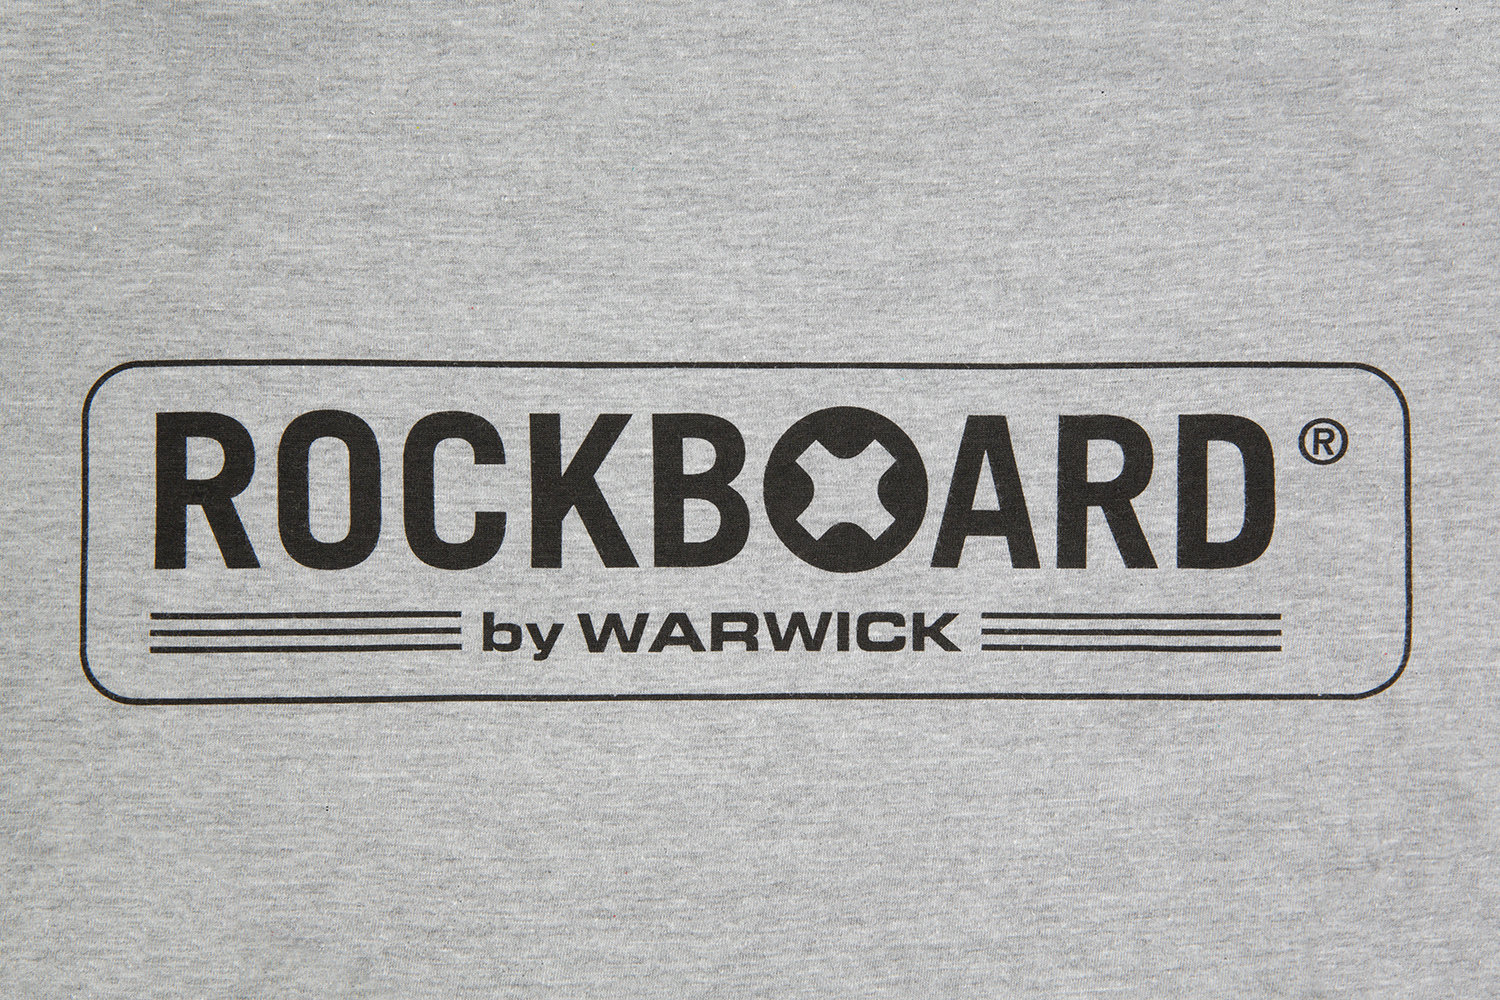 Rockboard